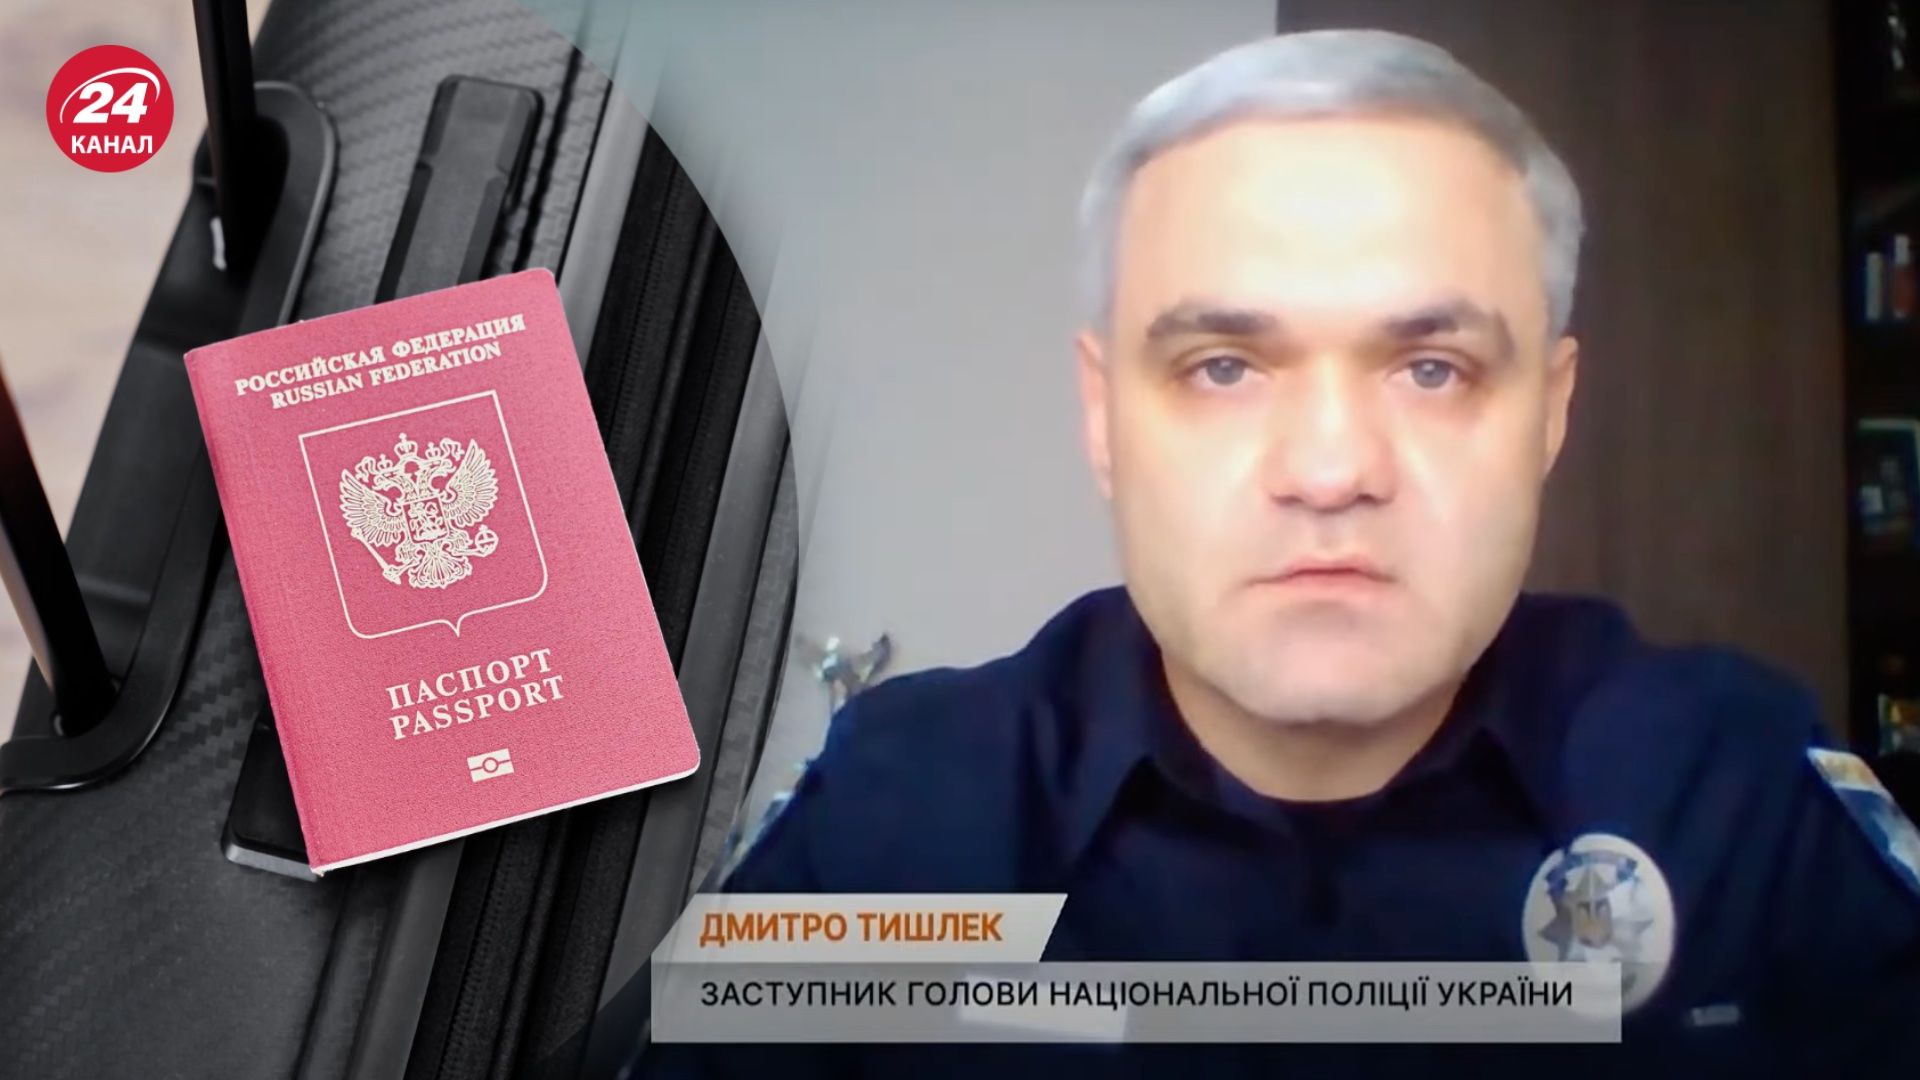 У Тишлека жена с паспортом России и теща-миллионерша